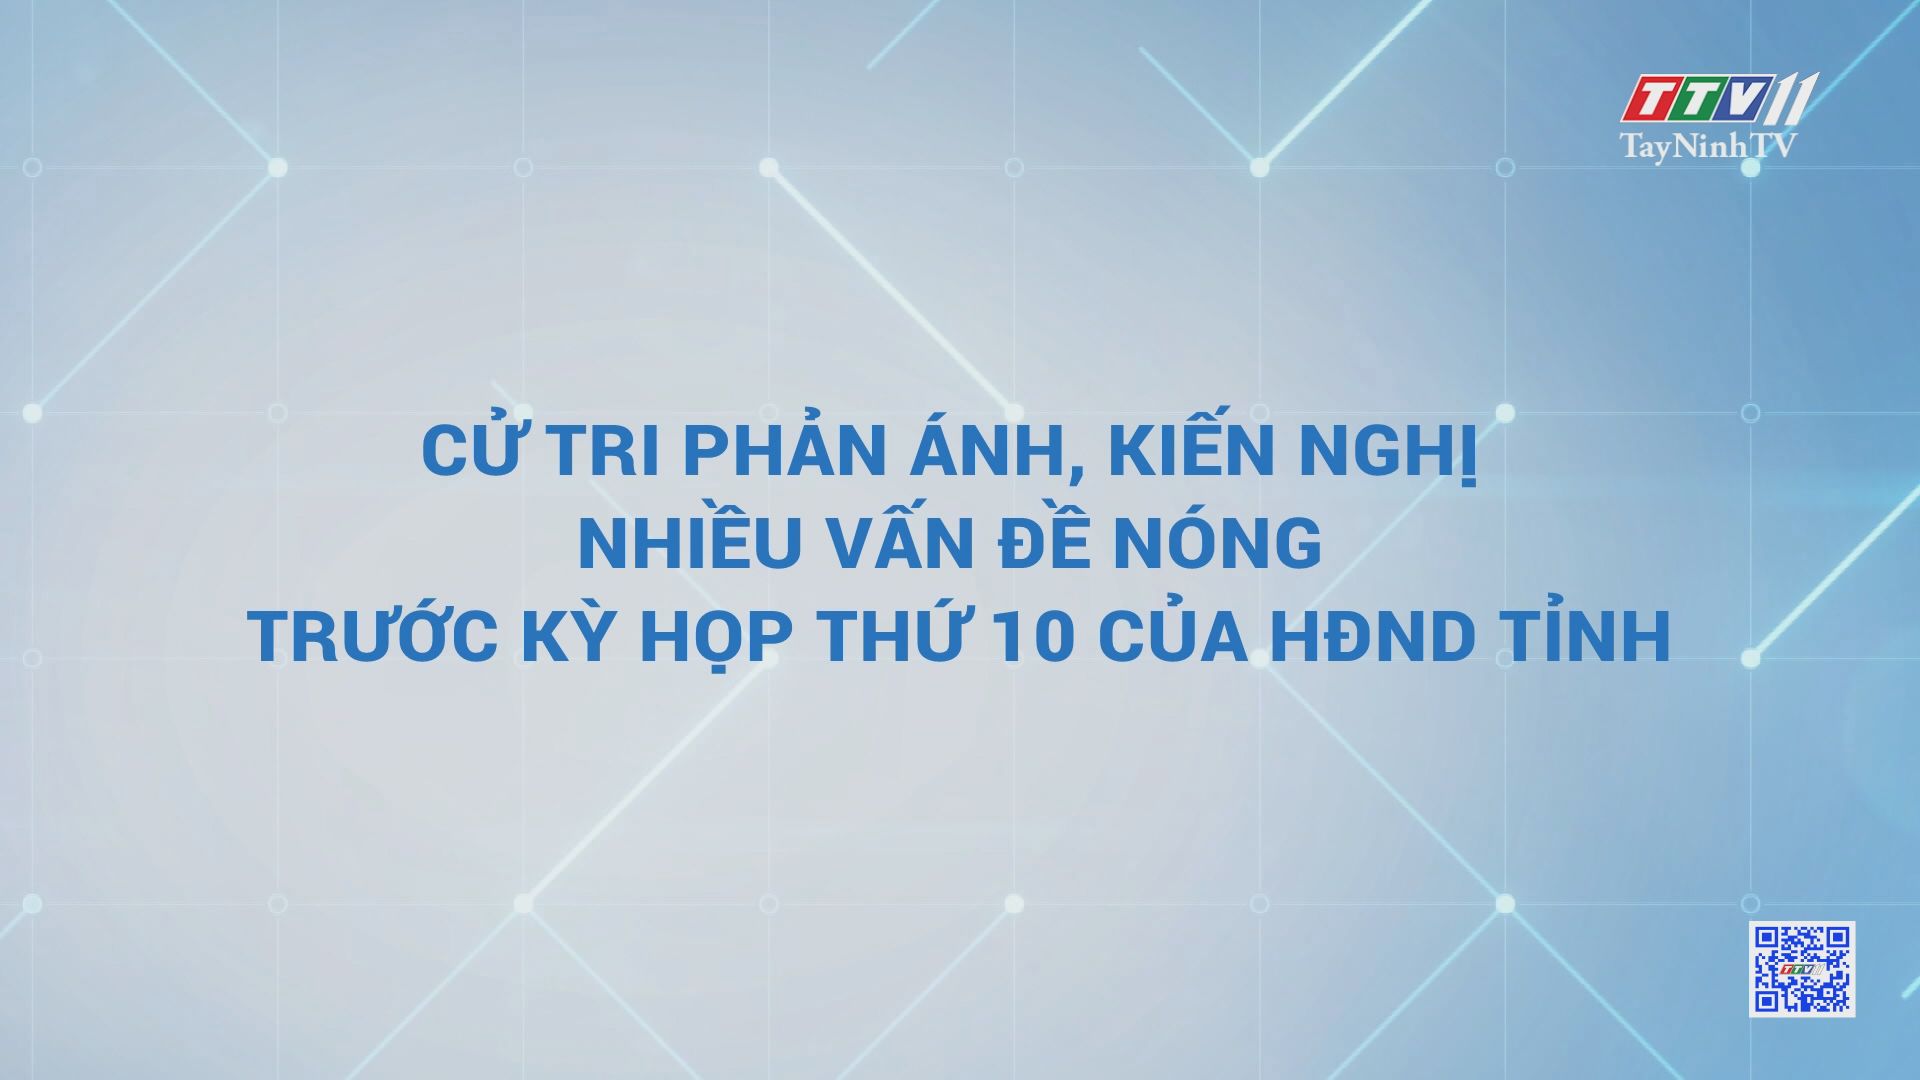 Cử tri phản ánh, kiến nghị nhiều vấn đề nóng trước kỳ họp thứ 10 của HĐND tỉnh | TayNinhTV